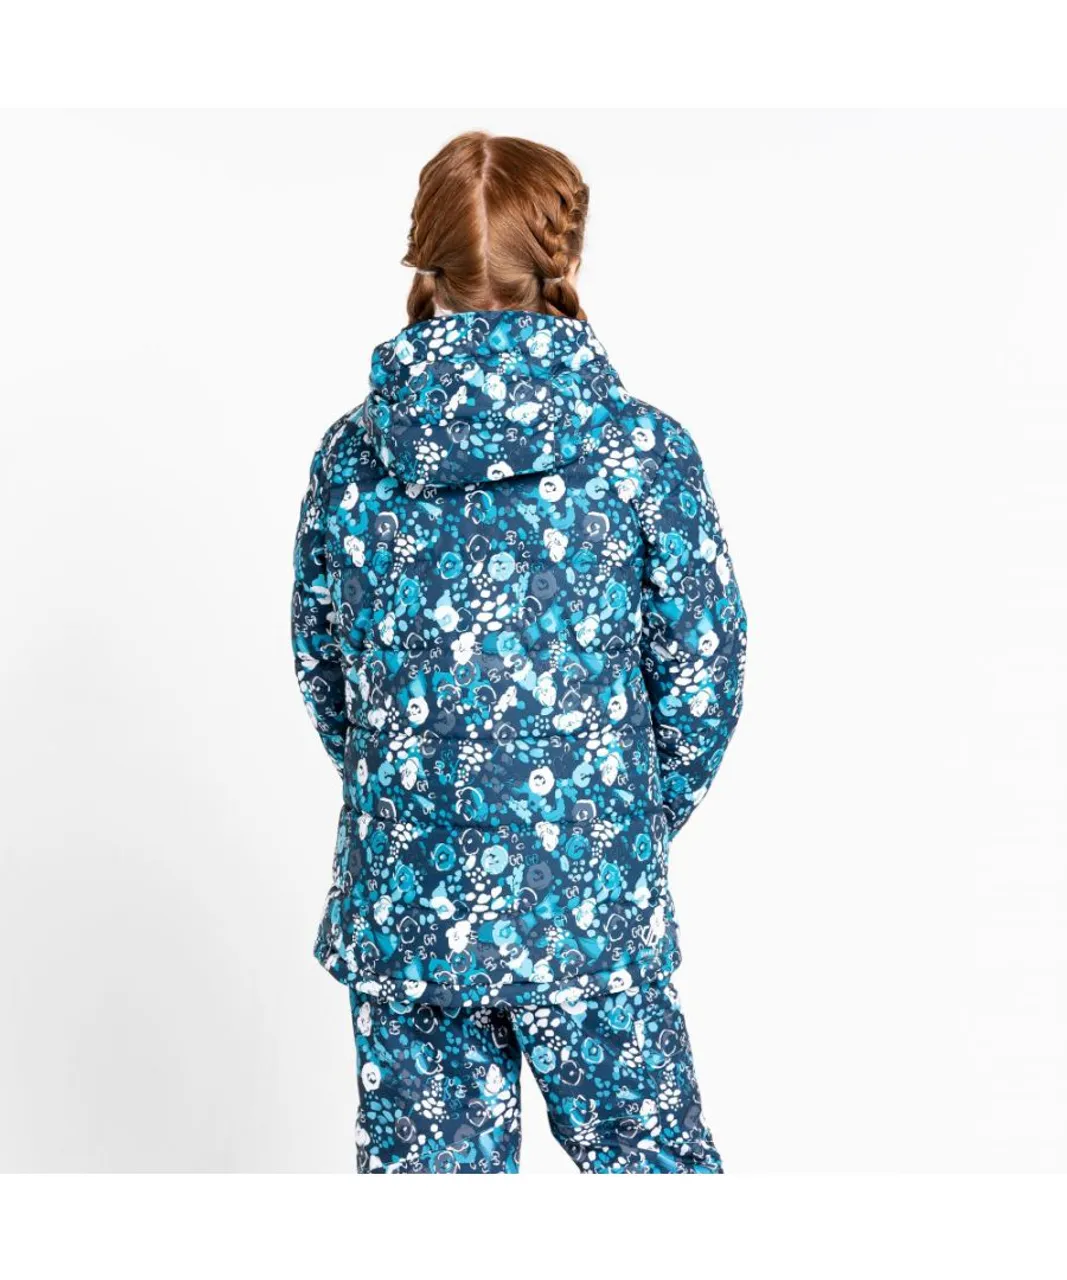 Dare 2B Girls Verdict Waterproof Breathable Ski Jacket - Blue